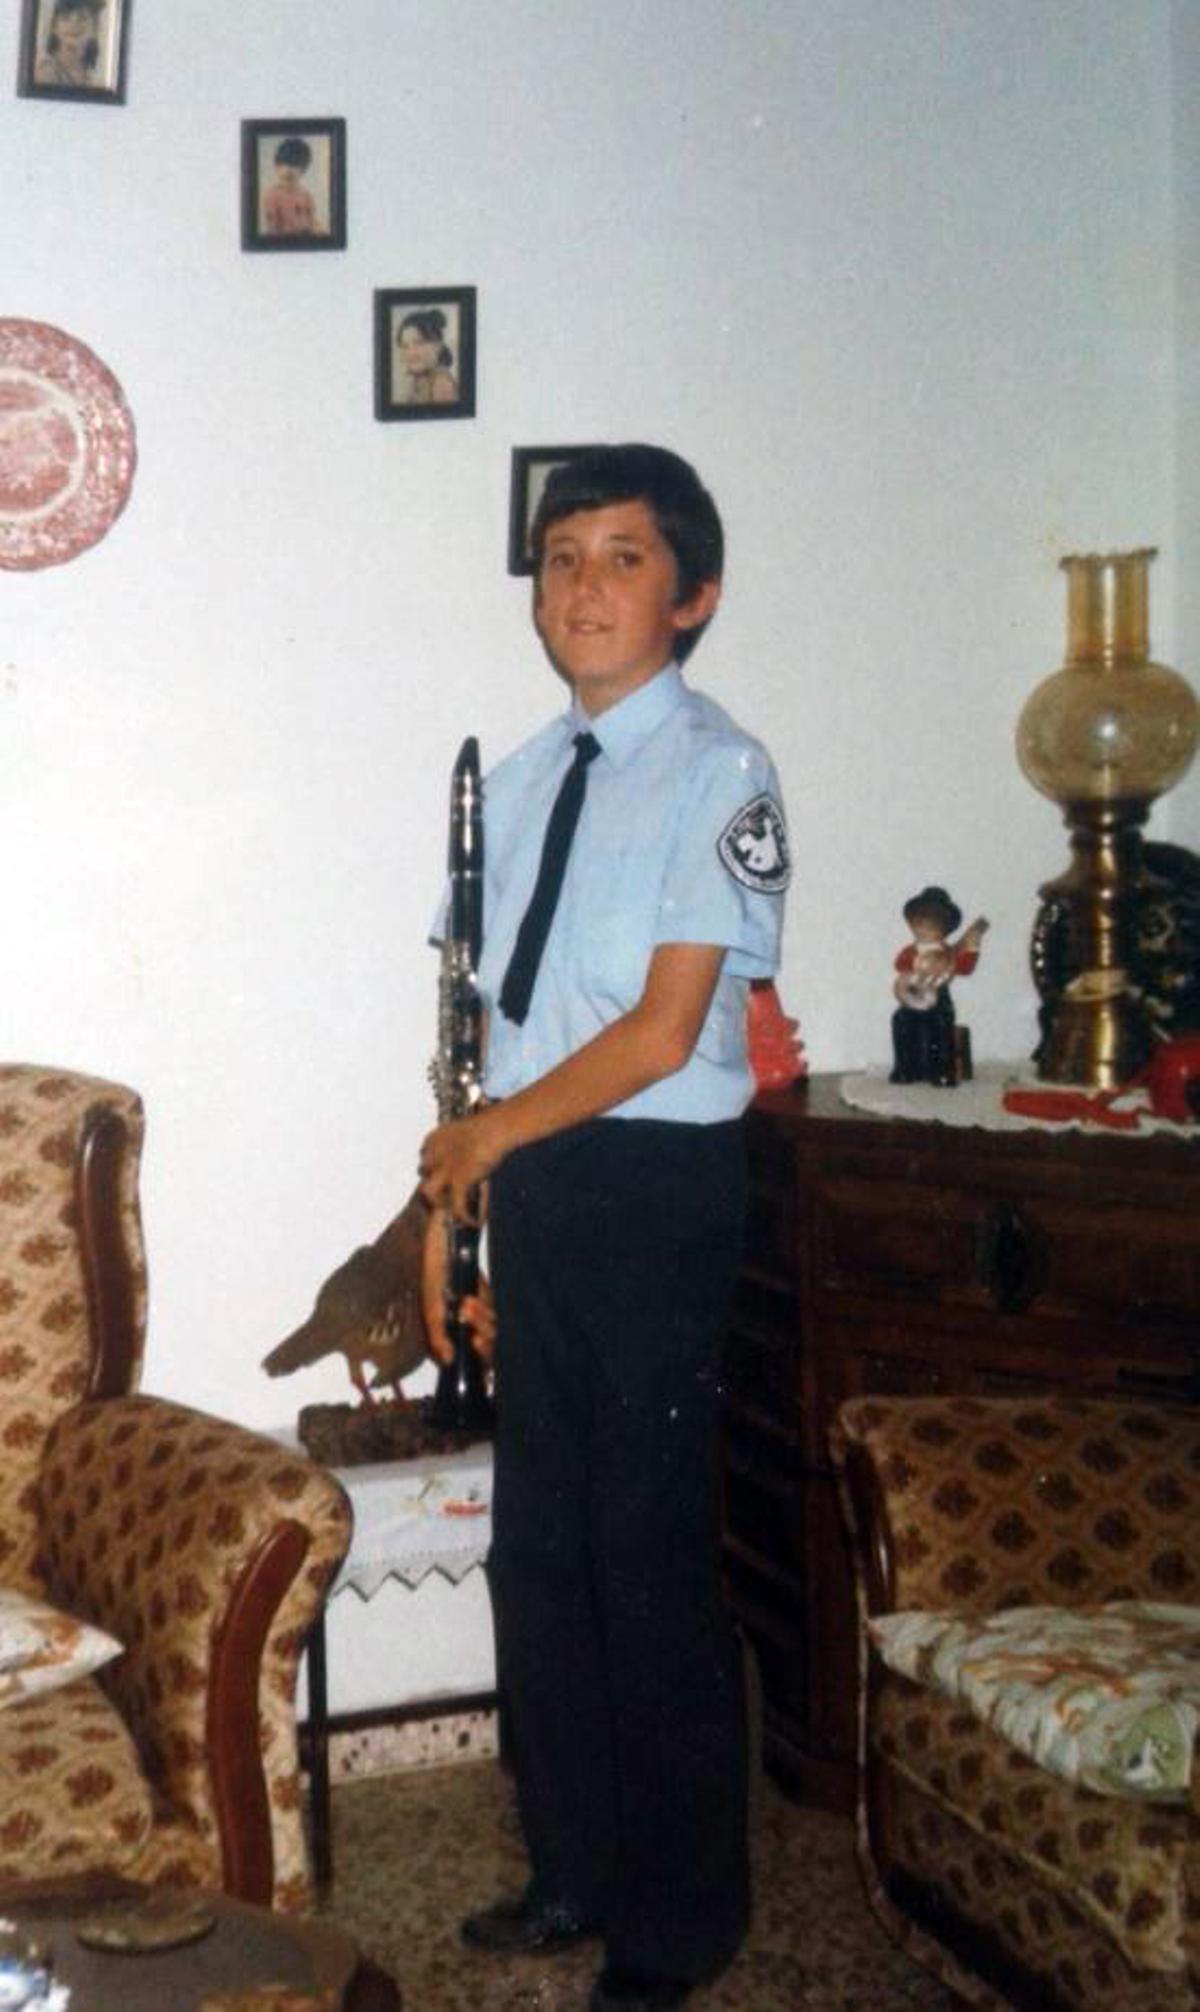 Antonio, a los 11 años, clarinetista de la banda de música de Churriana.